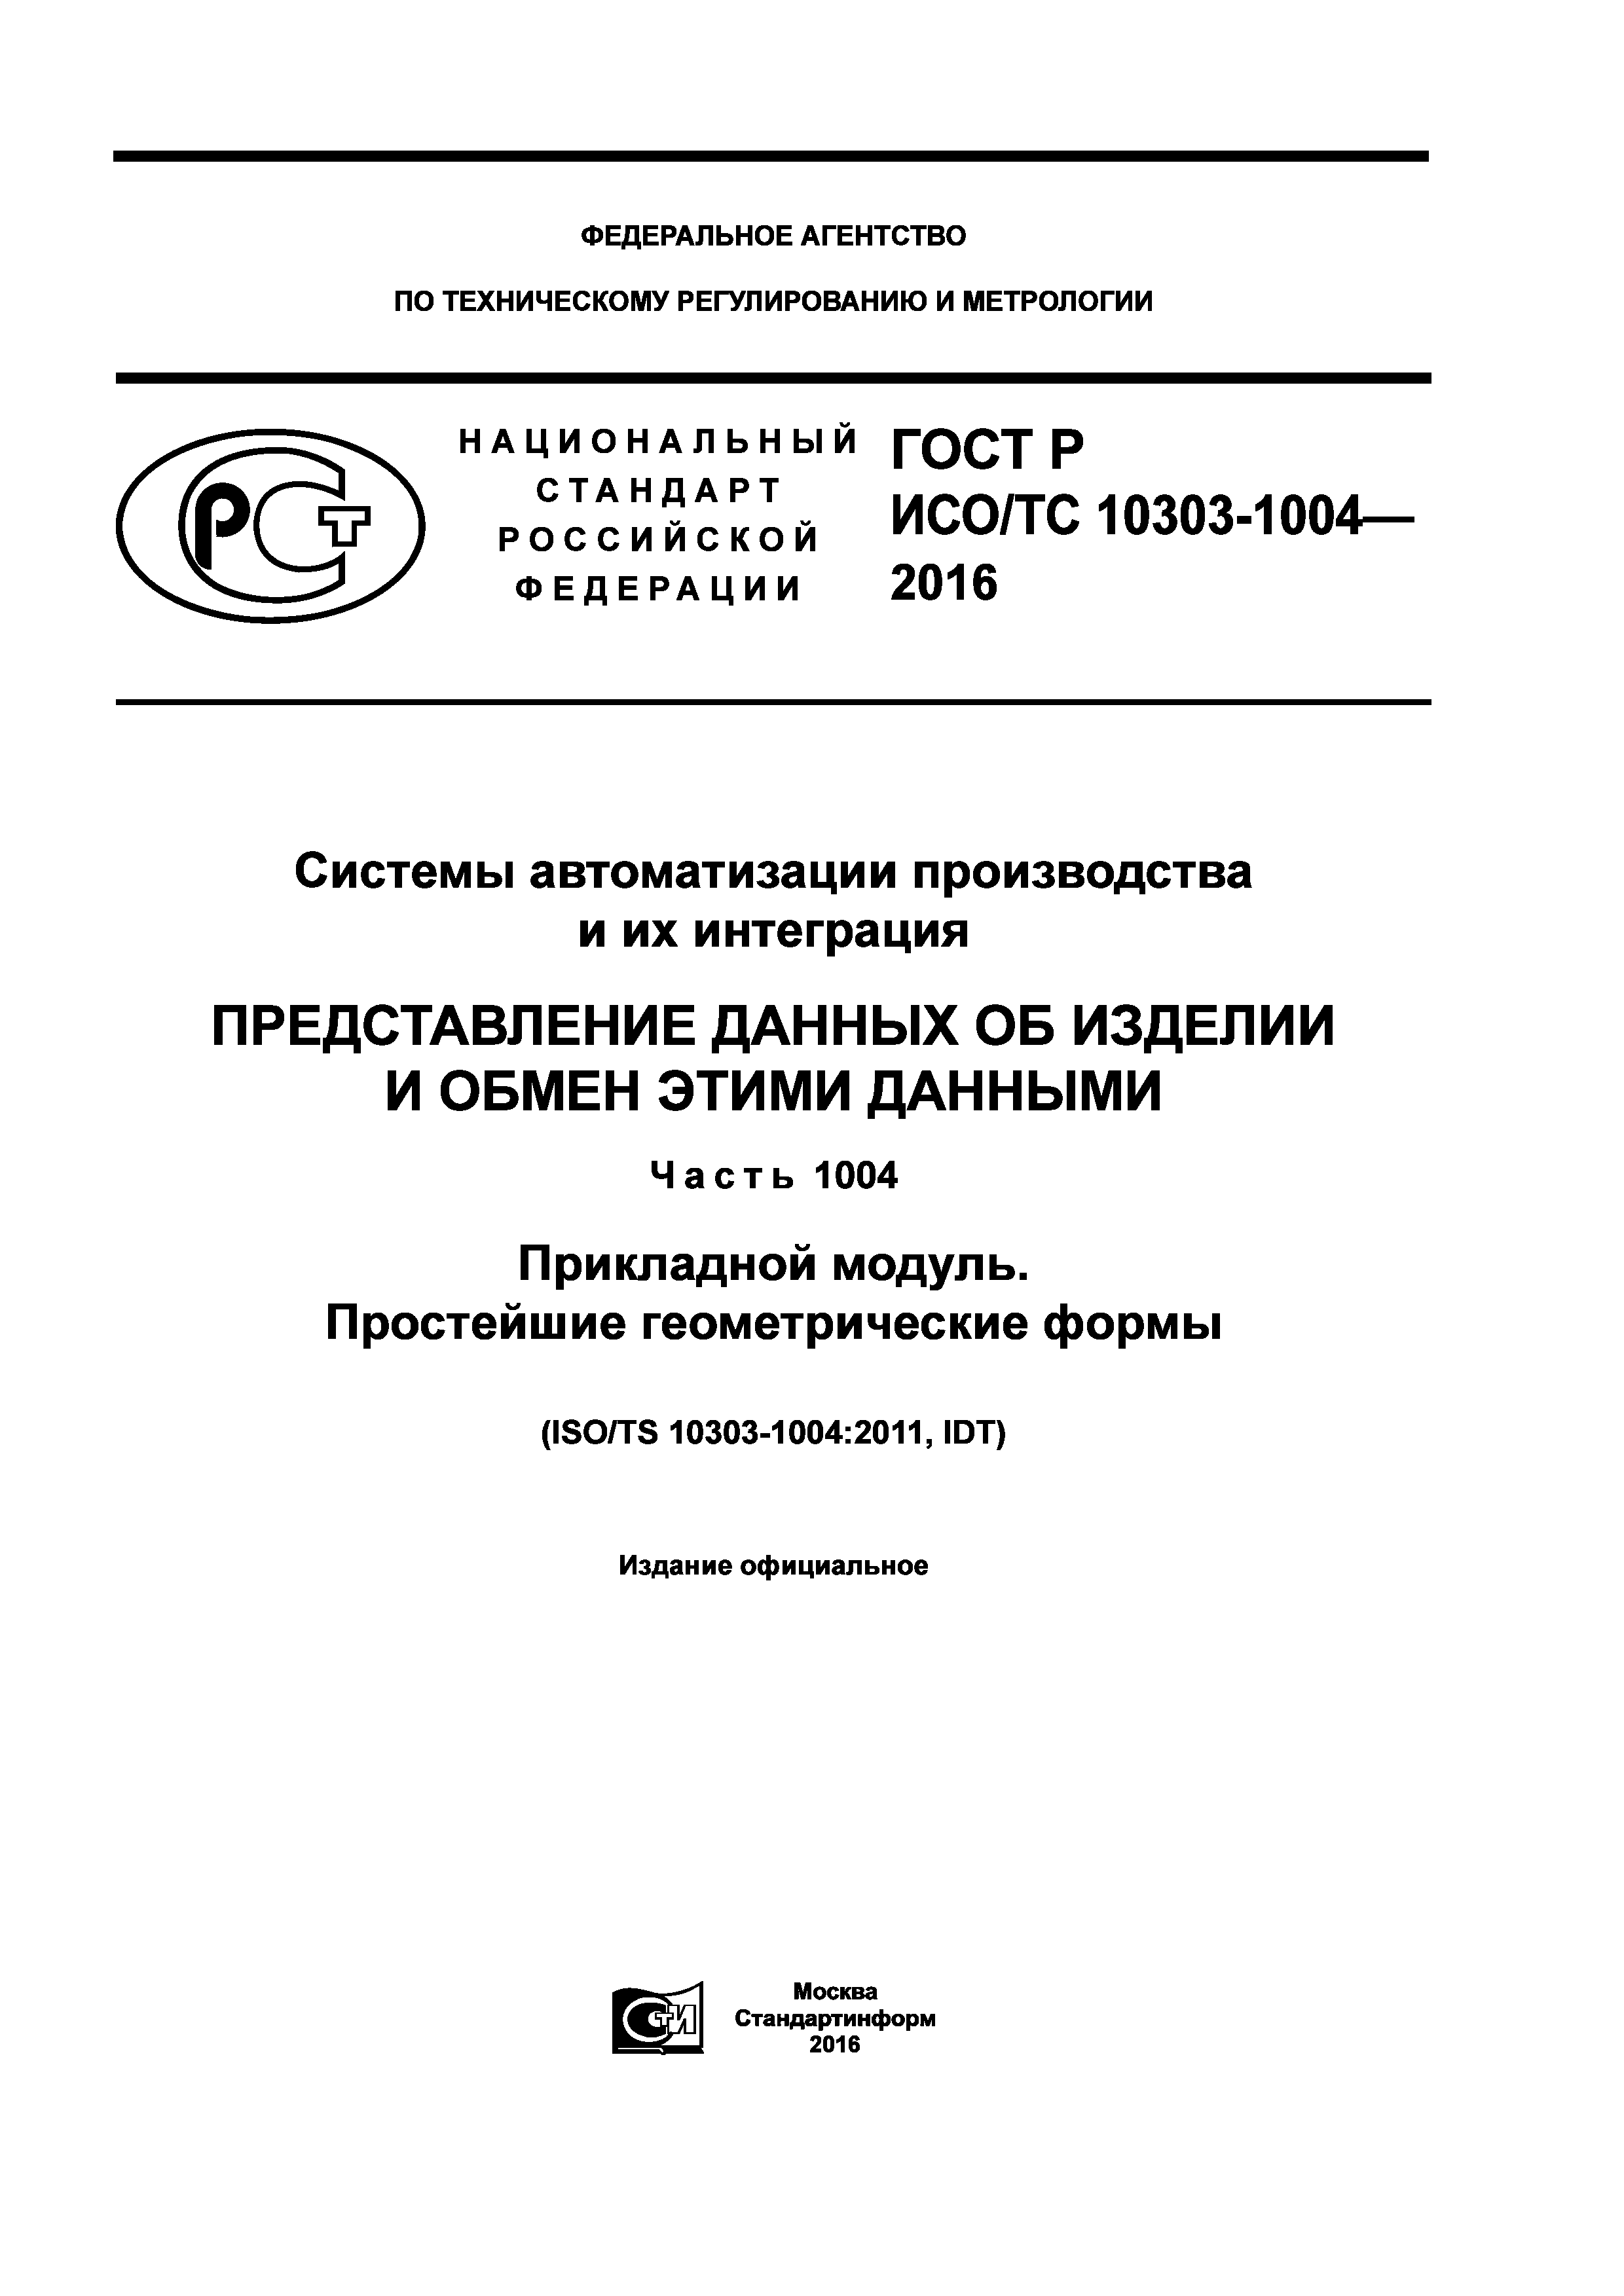 ГОСТ Р ИСО/ТС 10303-1004-2016